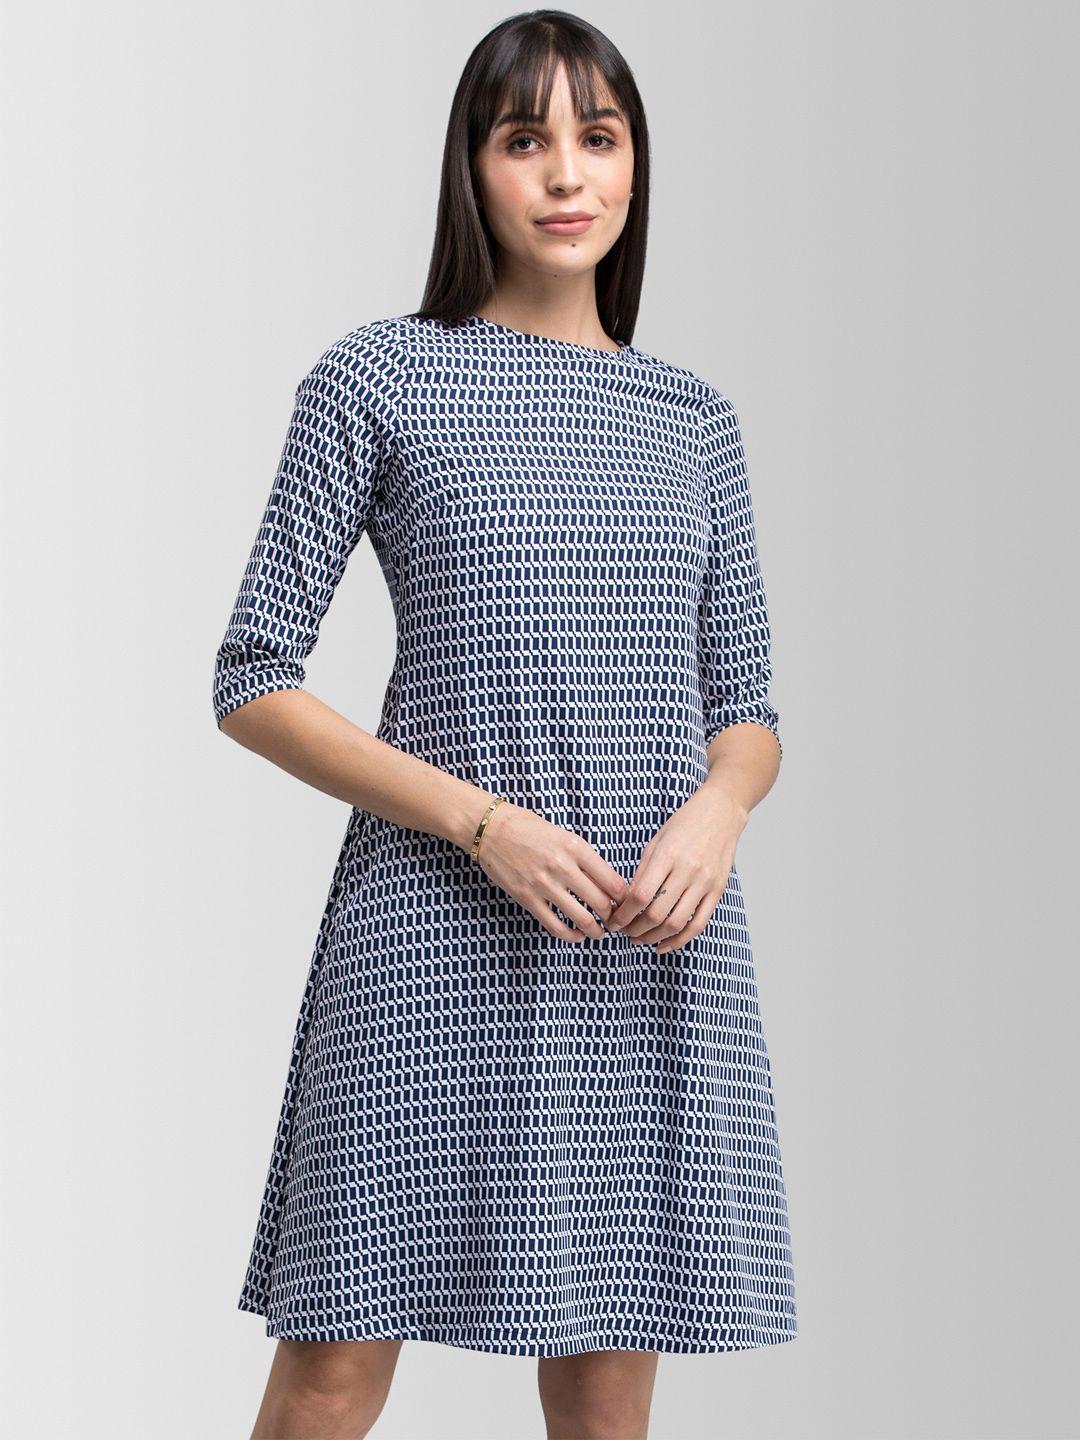 fablestreet women navy blue printed a-line dress